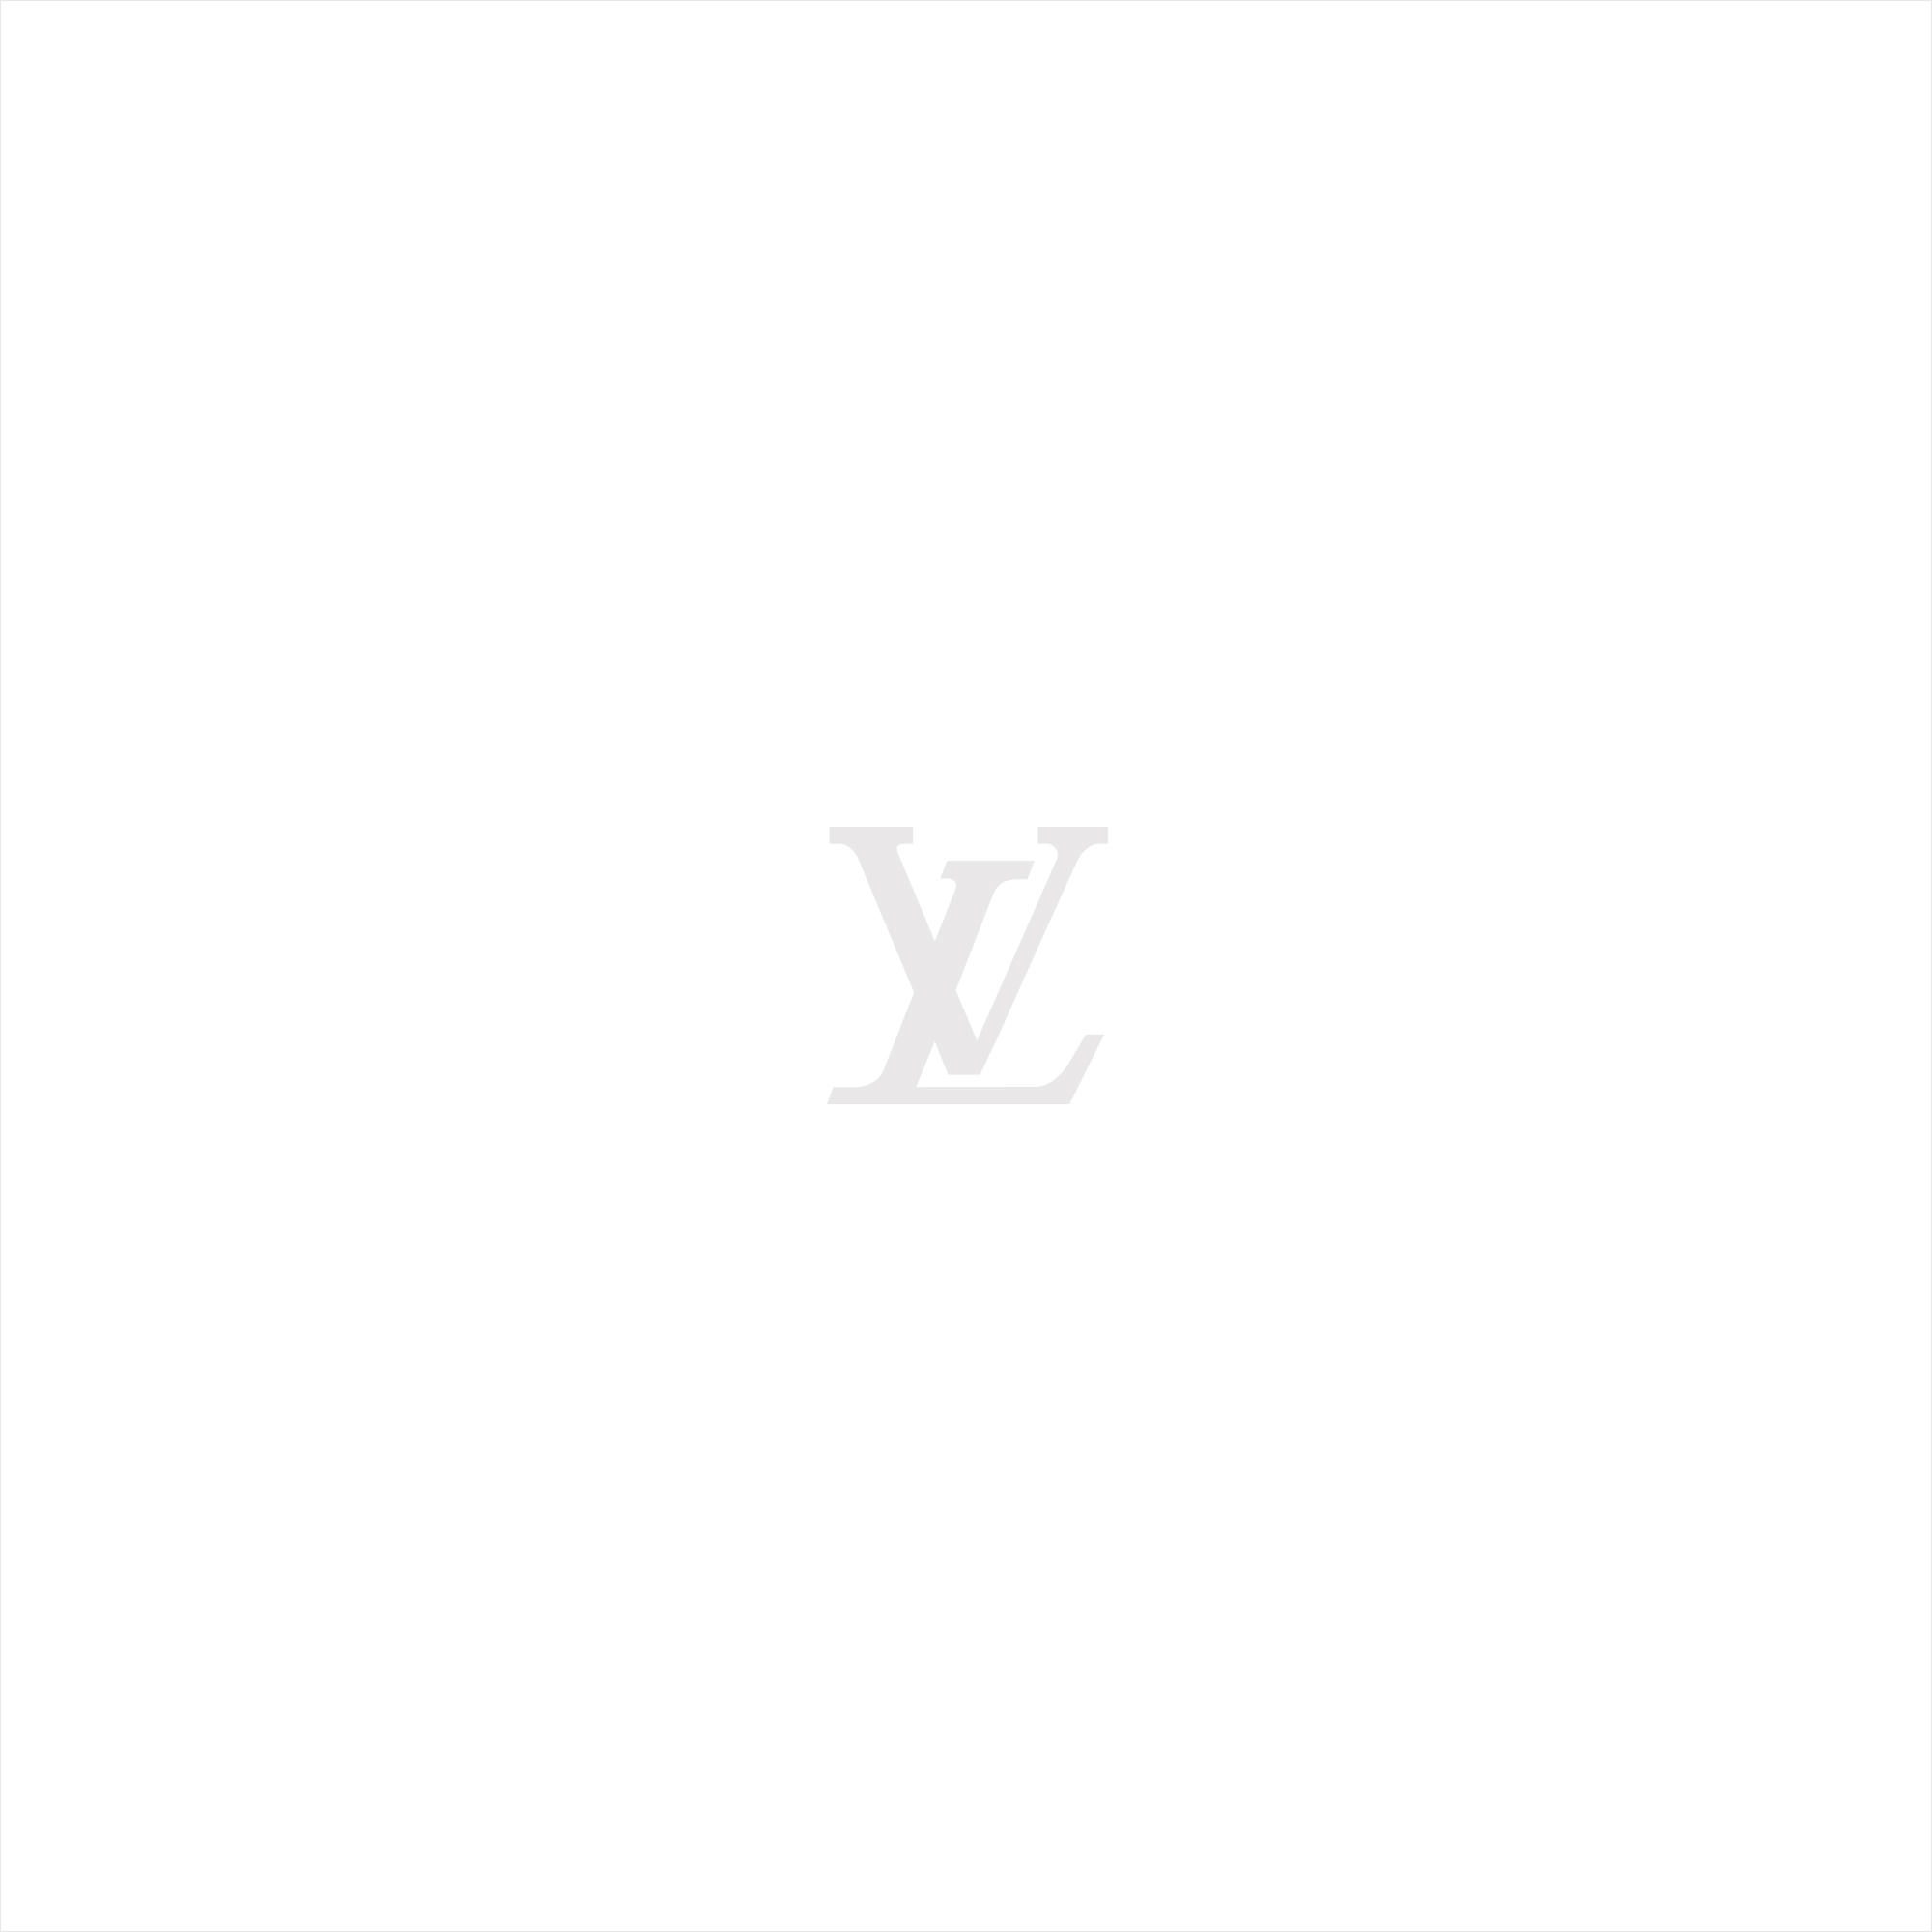 Louis Vuitton White Logo PNG